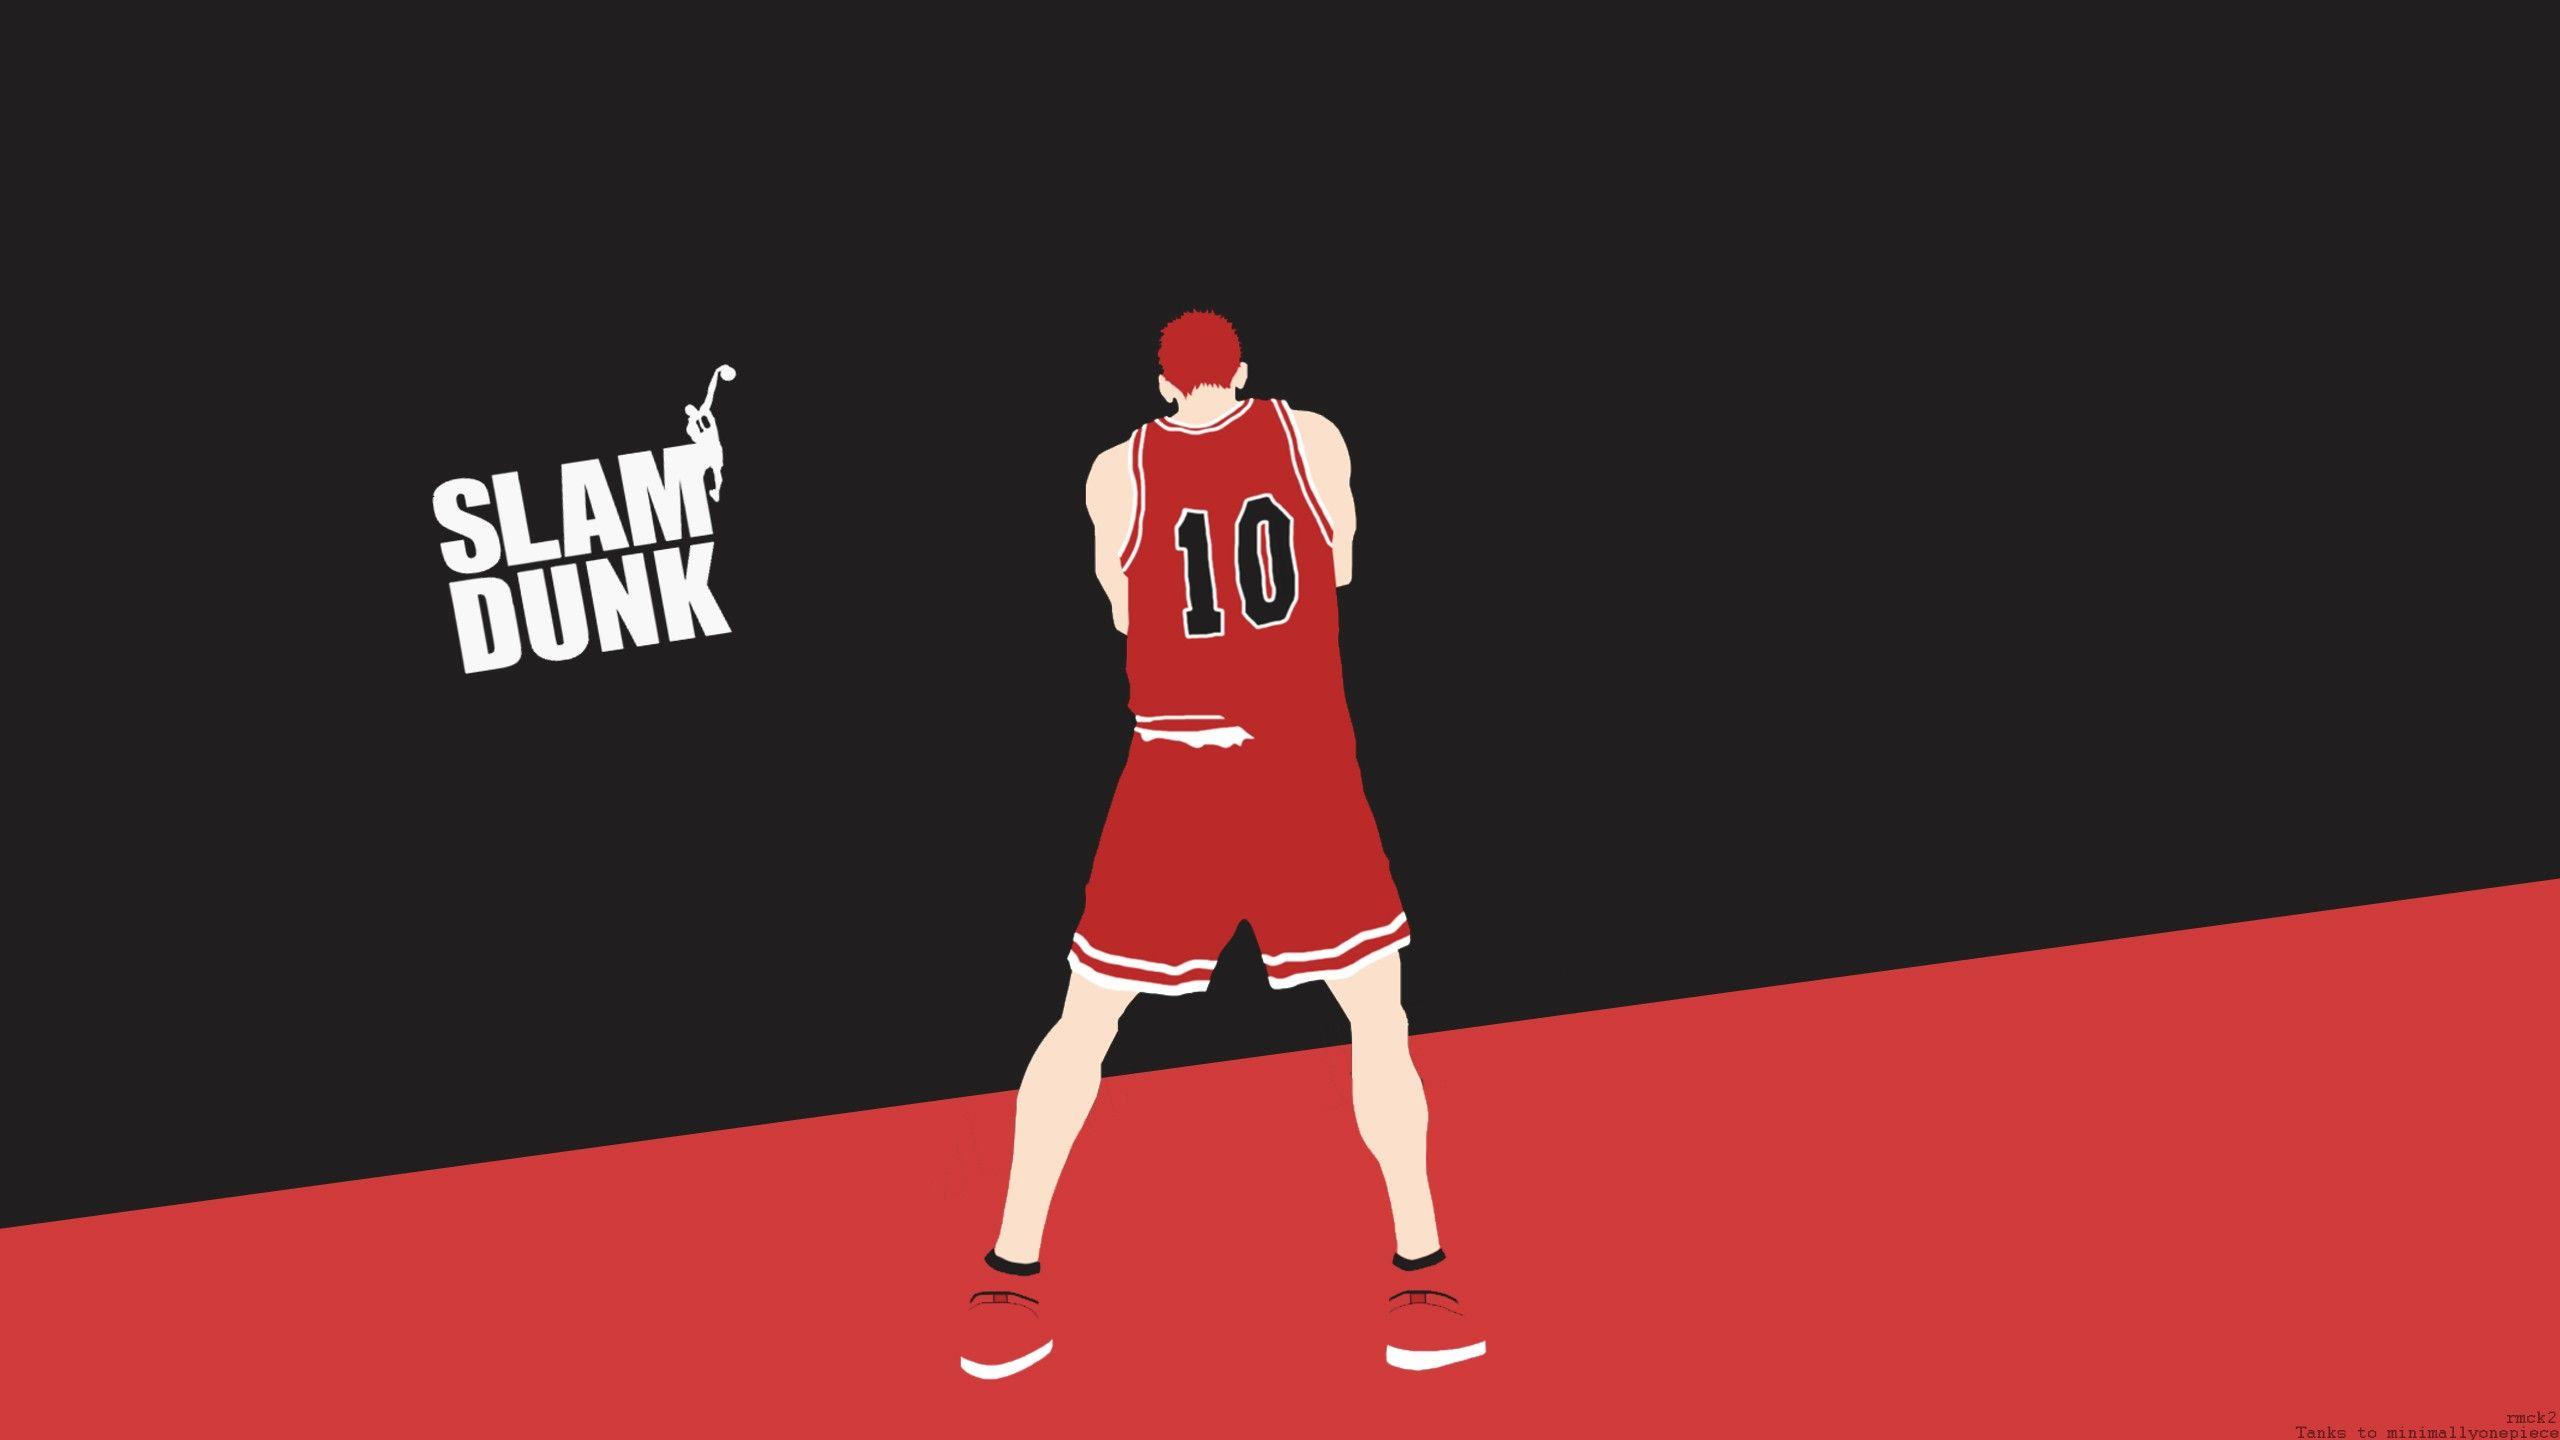 Wallpaper, illustration, red, ball, brand, clothing, Slam Dunk